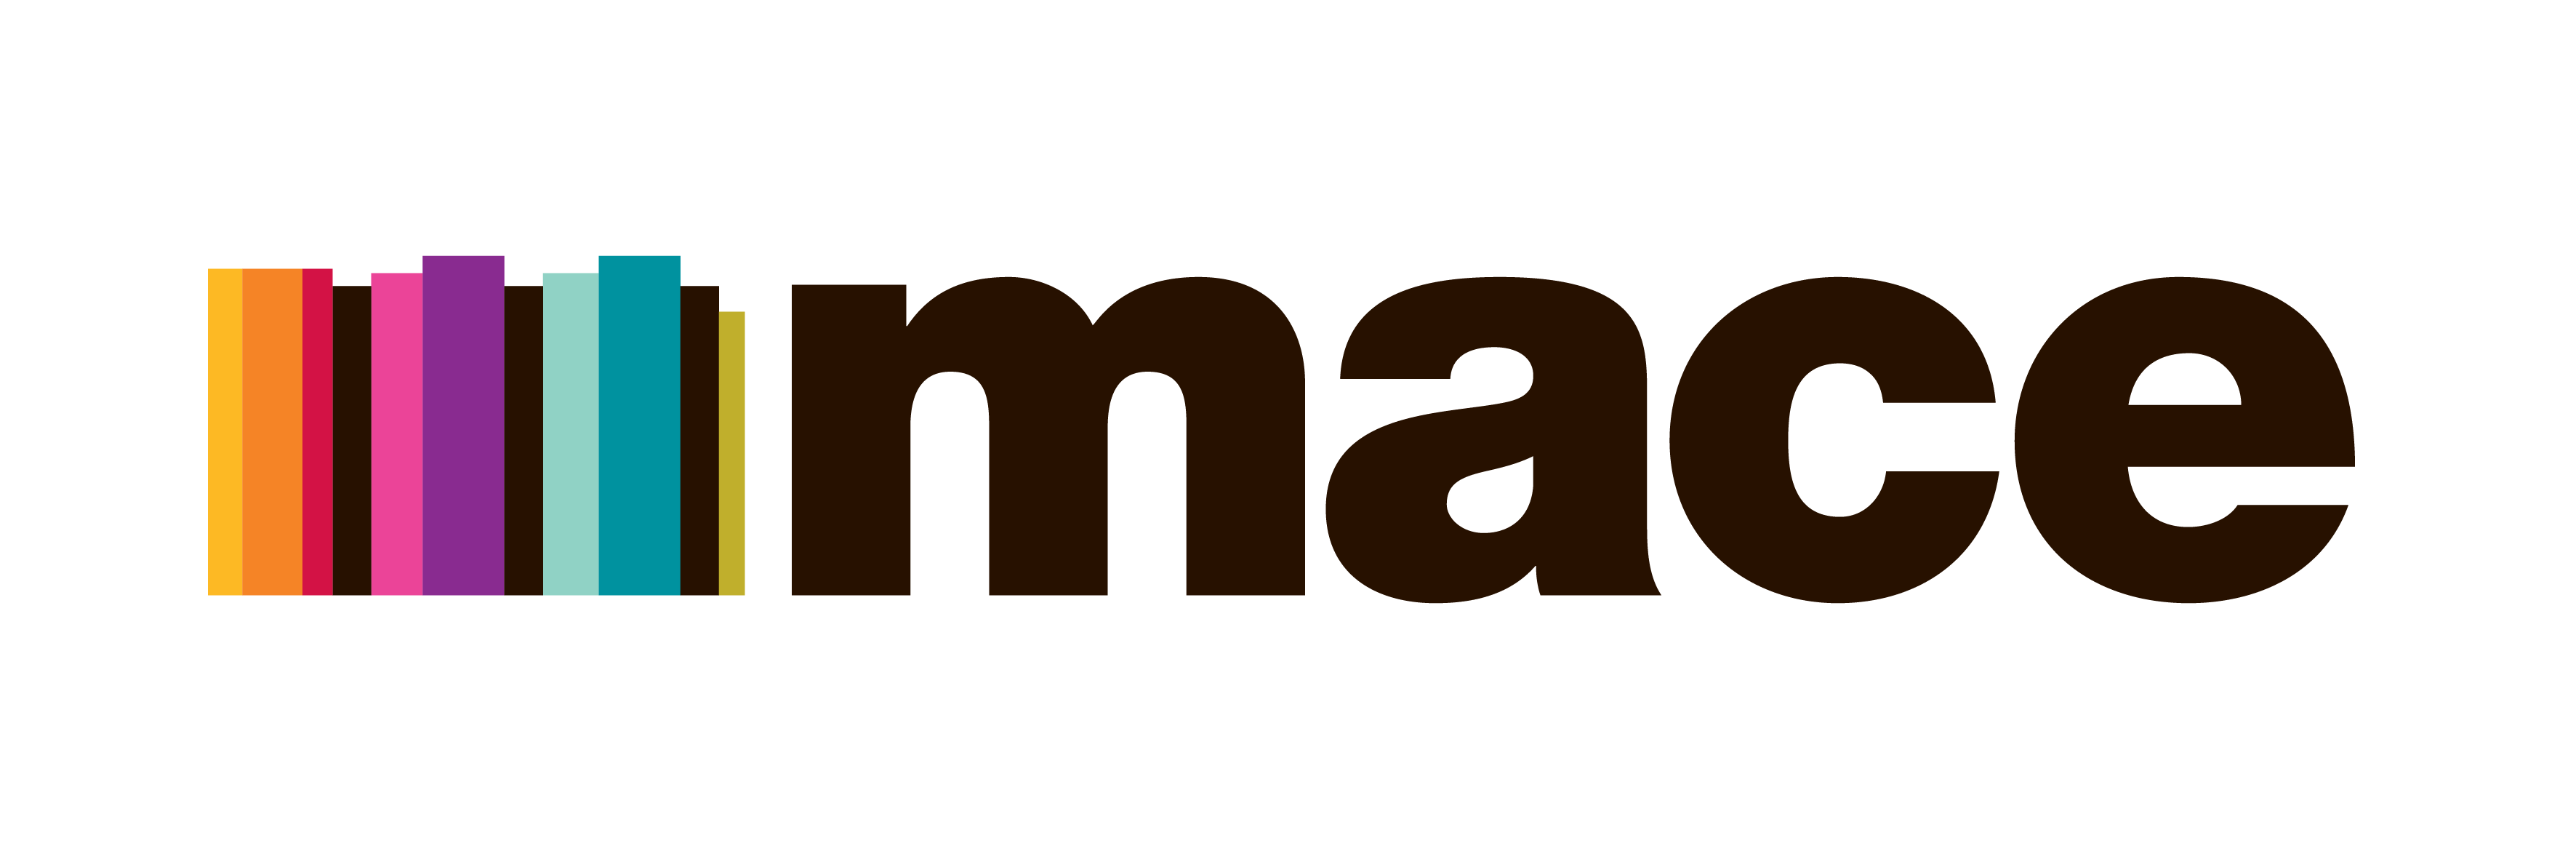 Infomace Mace Logos_ART-14 04 22-JW-Mace_CMYK